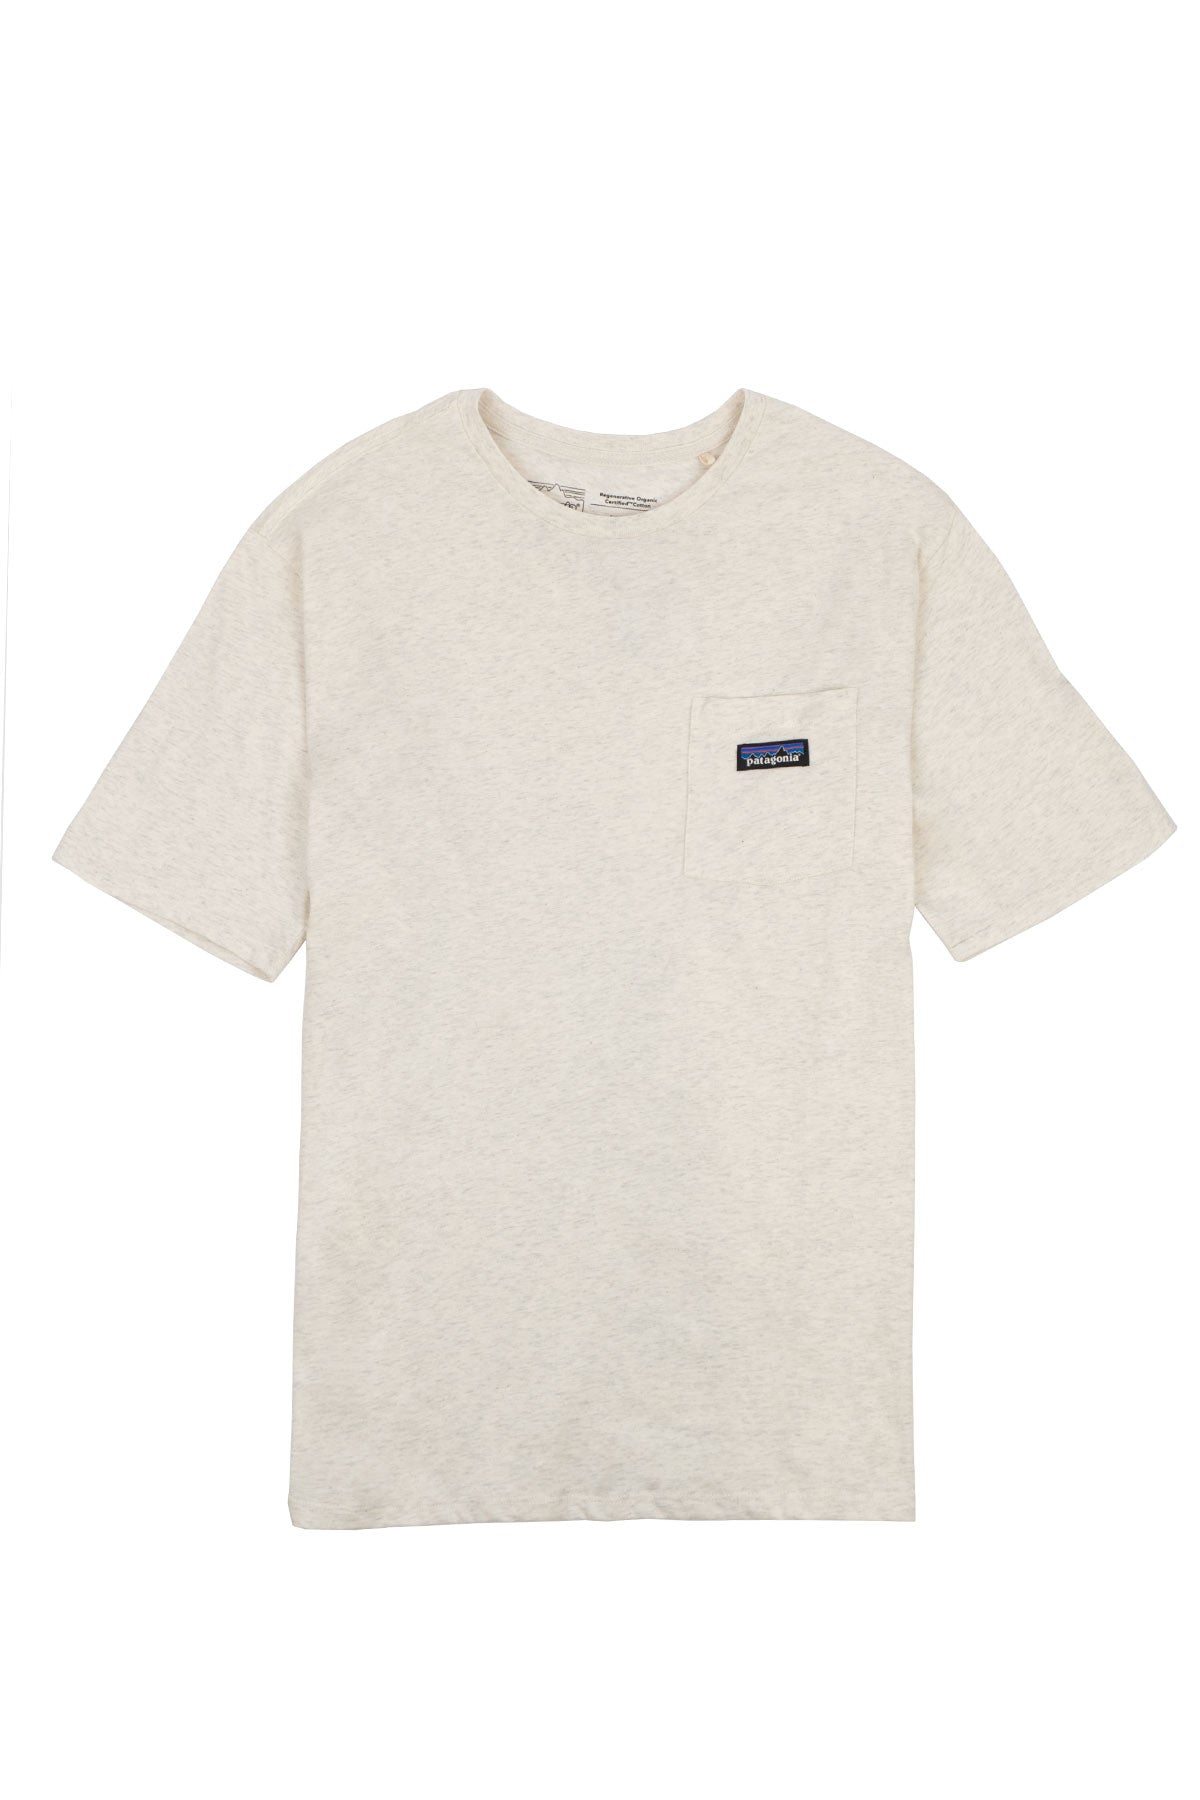 T-shirt Daily Pocket - Patagonia